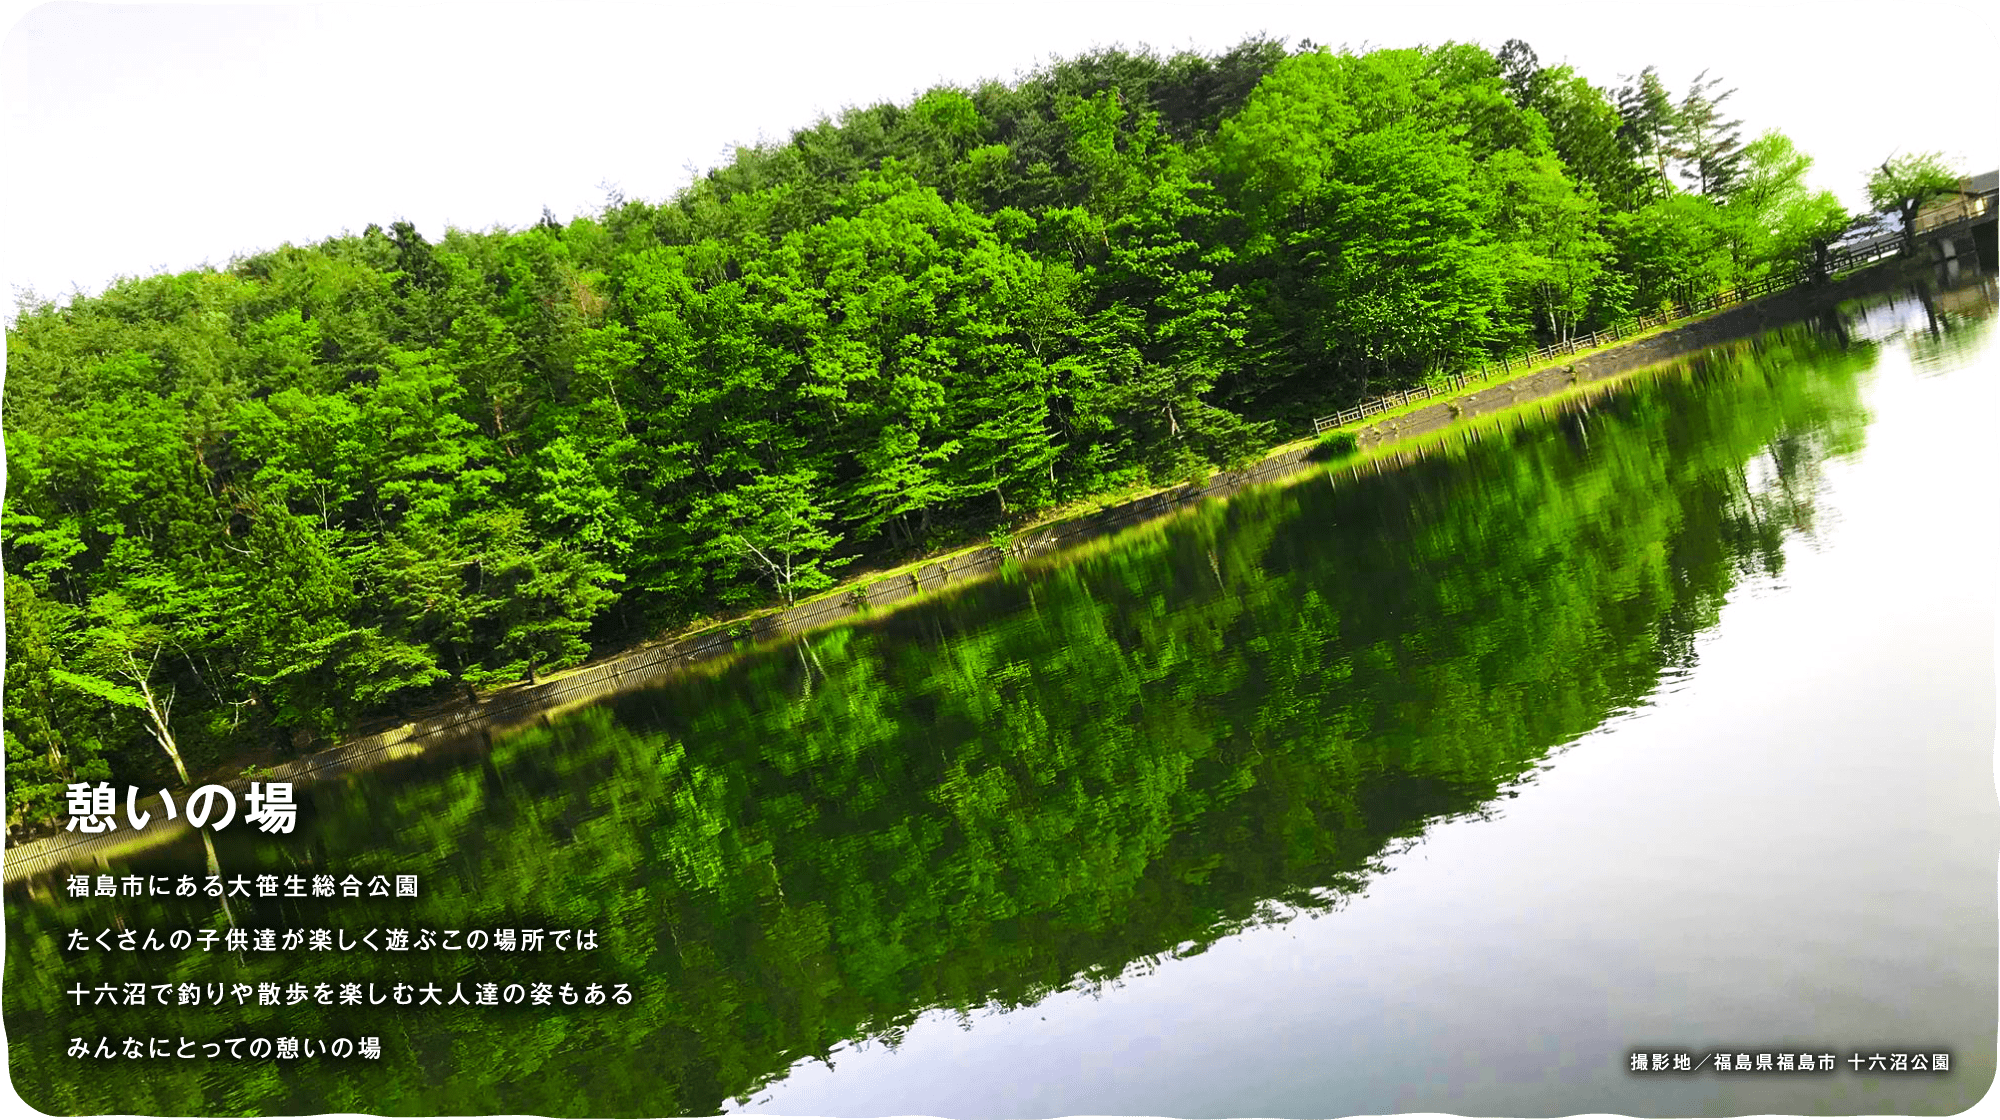 憩いの場　福島市にある大笹生総合公園たくさんの子供達が楽しく遊ぶこの場所では十六沼で釣りや散歩を楽しむ大人達の姿もあるみんなにとっての憩いの場